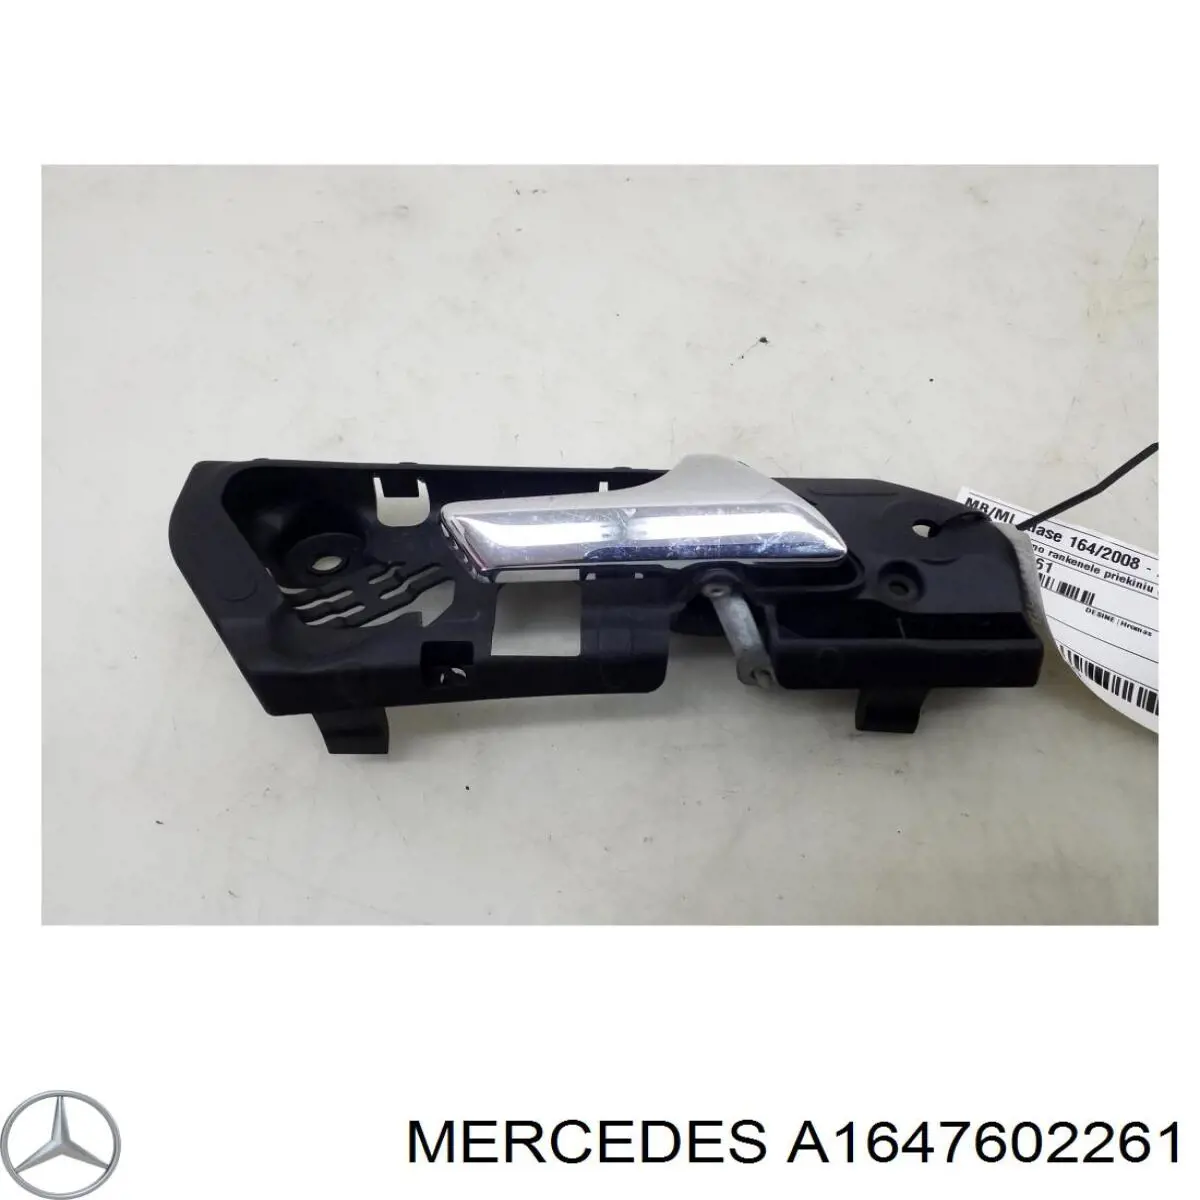 A1647602261 Mercedes manecilla de puerta, equipamiento habitáculo, delantera derecha